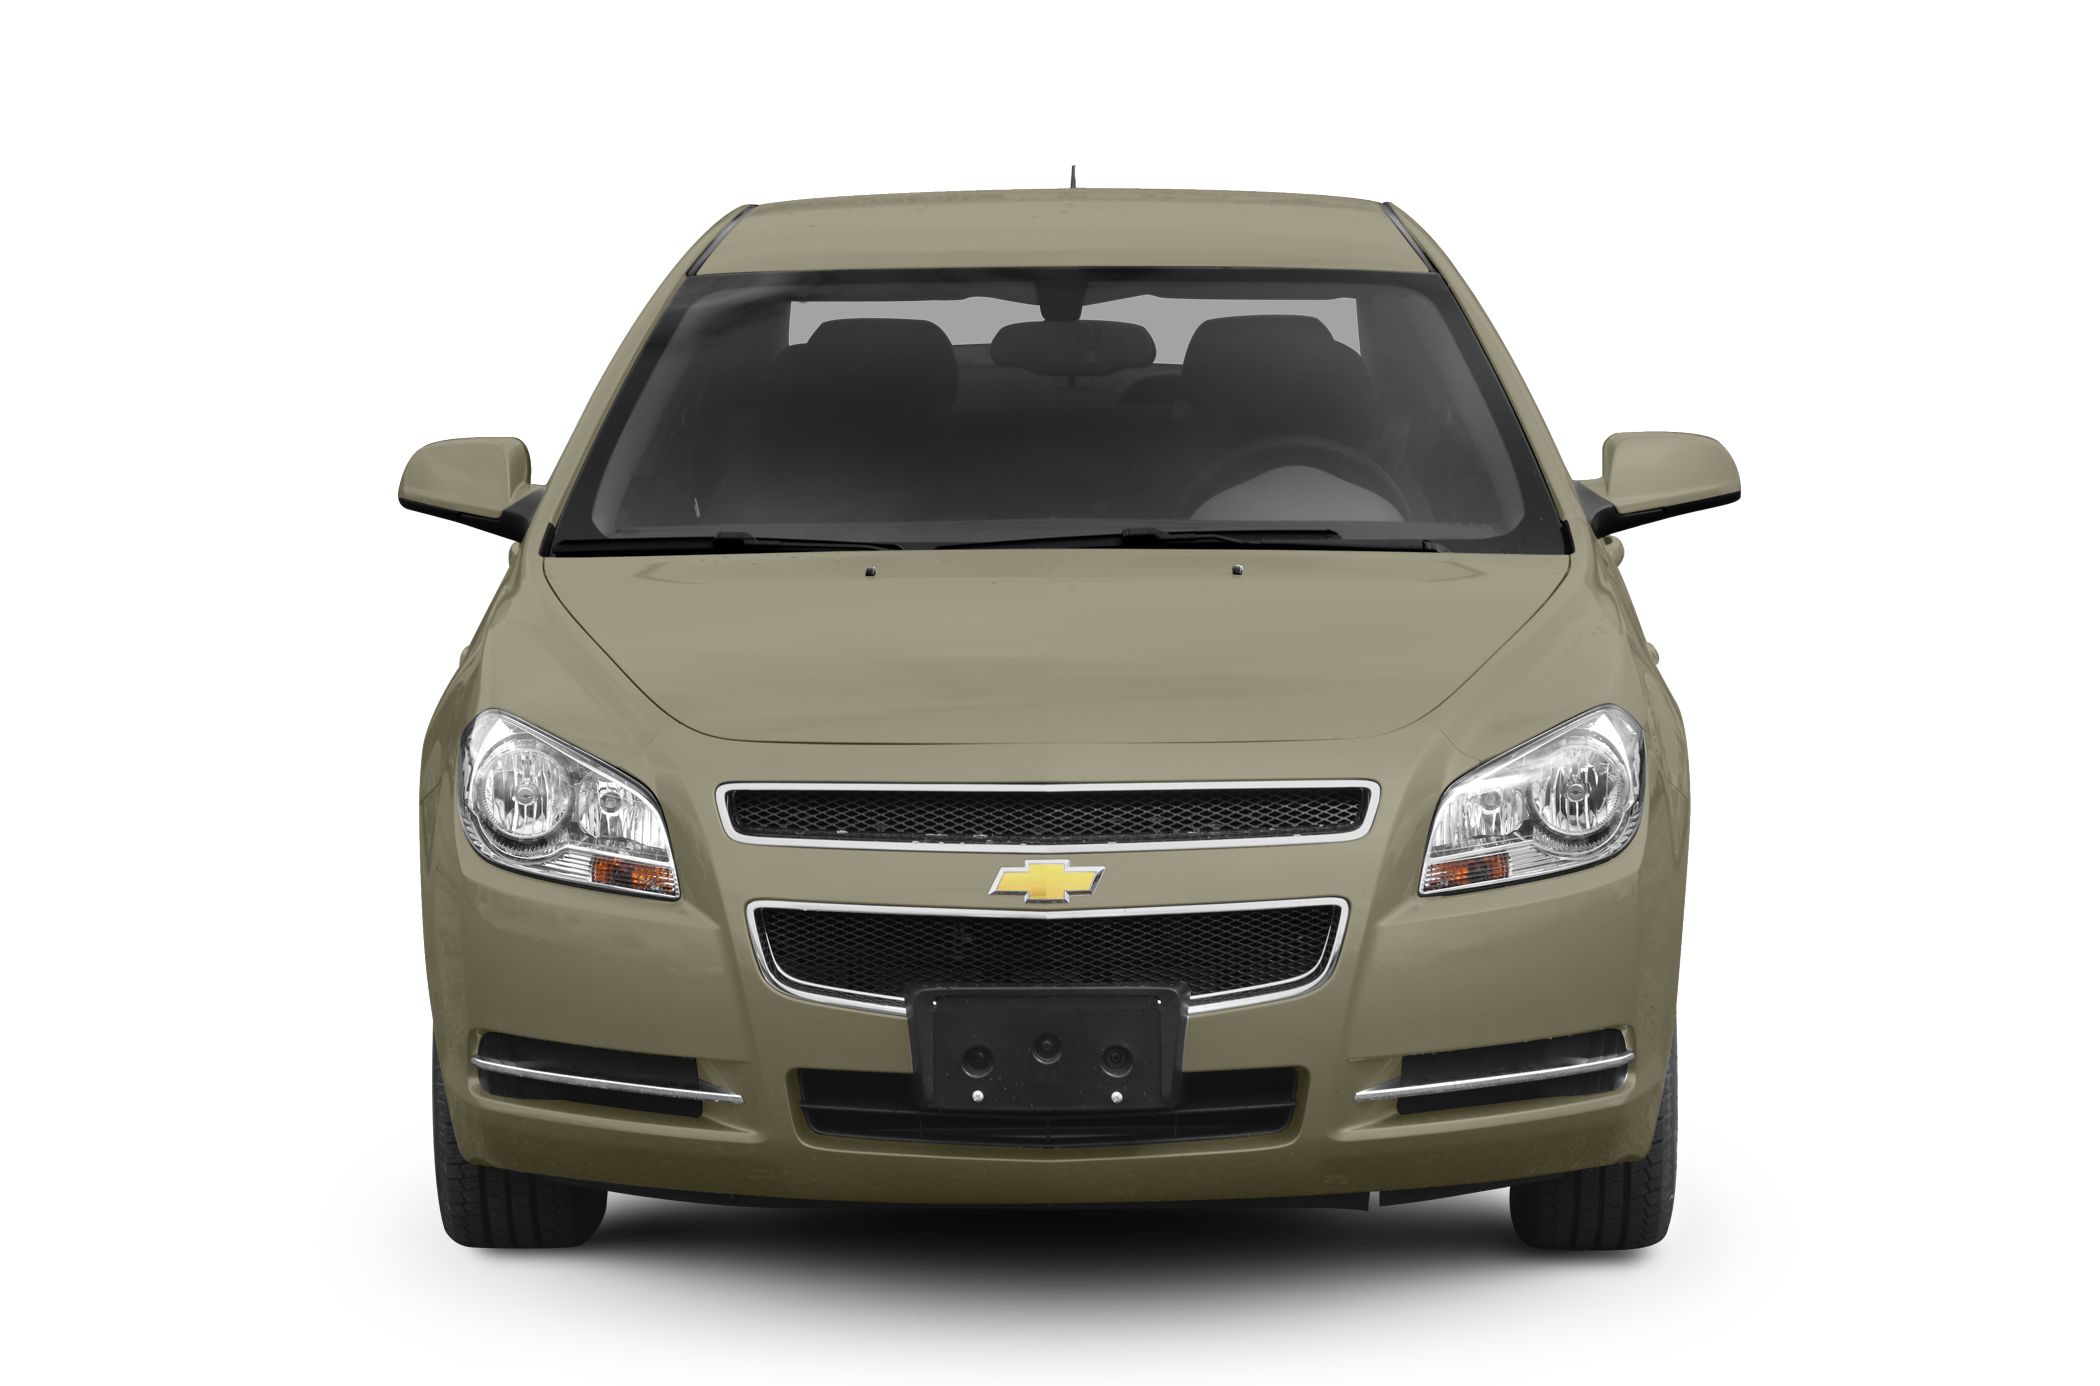 2010 Chevrolet Malibu Hybrid